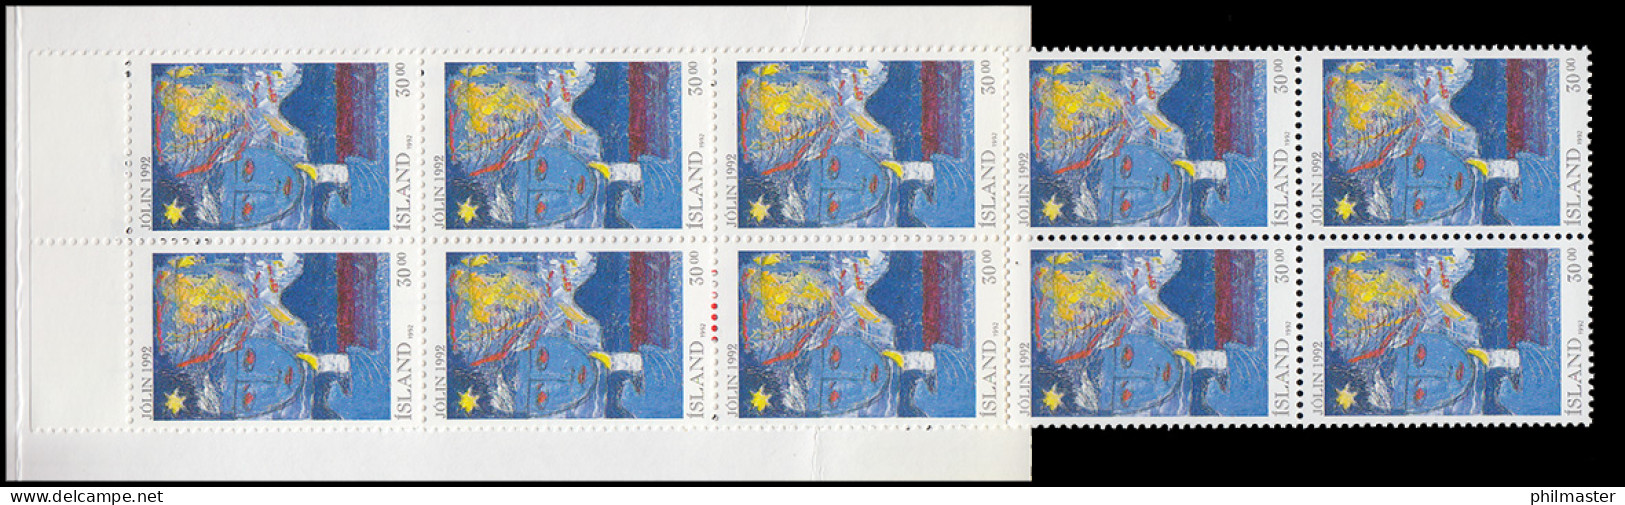 Island Markenheftchen 774 Weihnachten 300 Kr. 1992, ** Postfrisch - Booklets